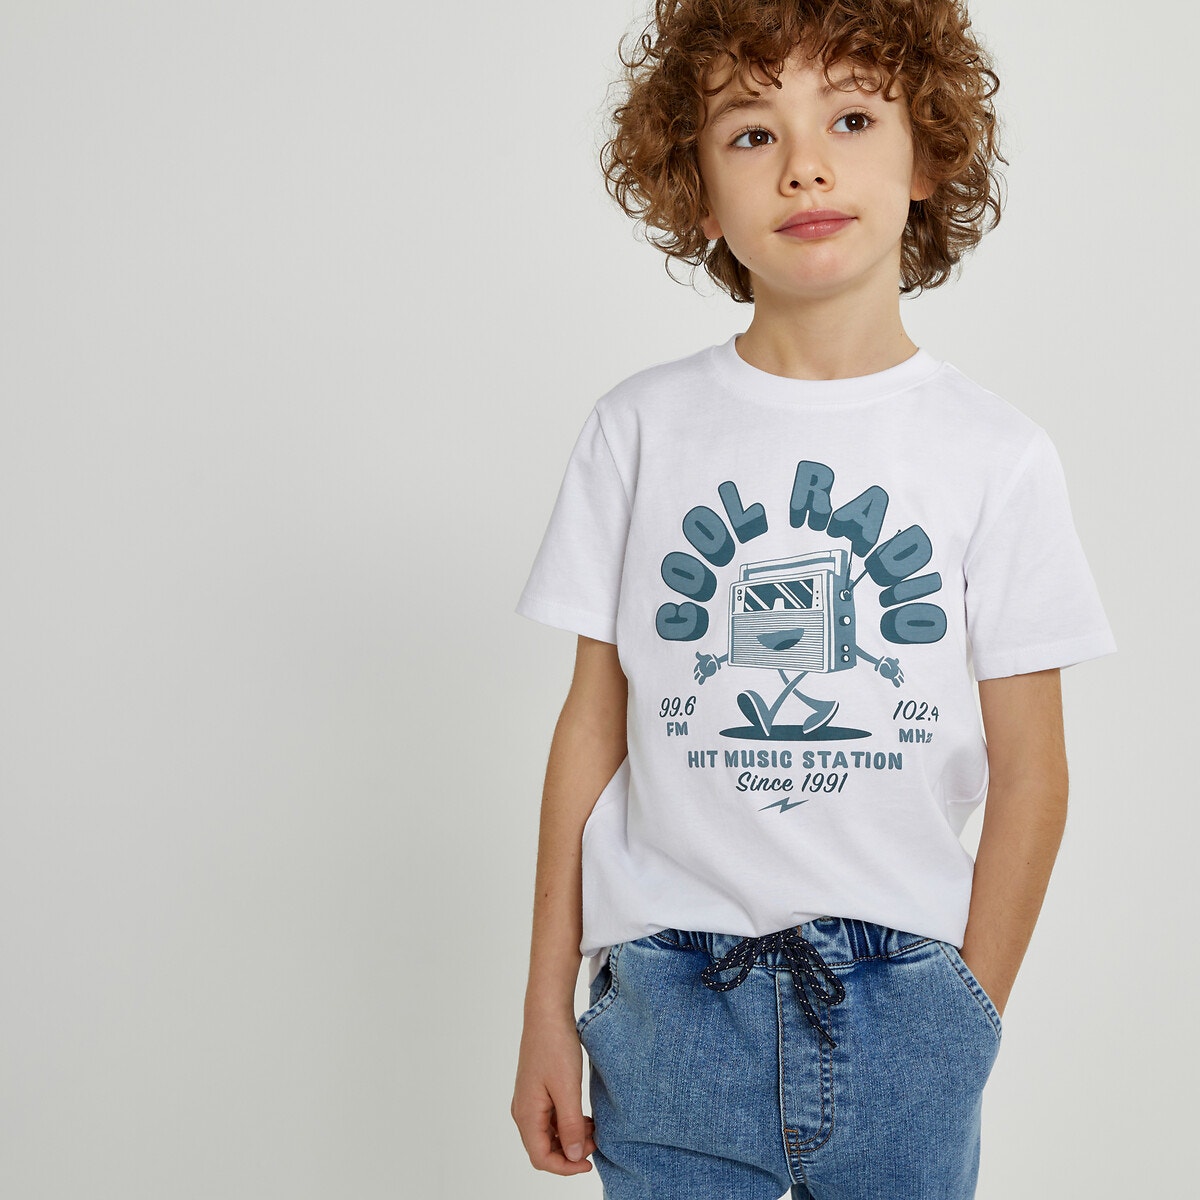 Μόδα > Παιδικά > Αγόρι > T-shirt, πόλο > Κοντά μανίκια Κοντομάνικο T-shirt